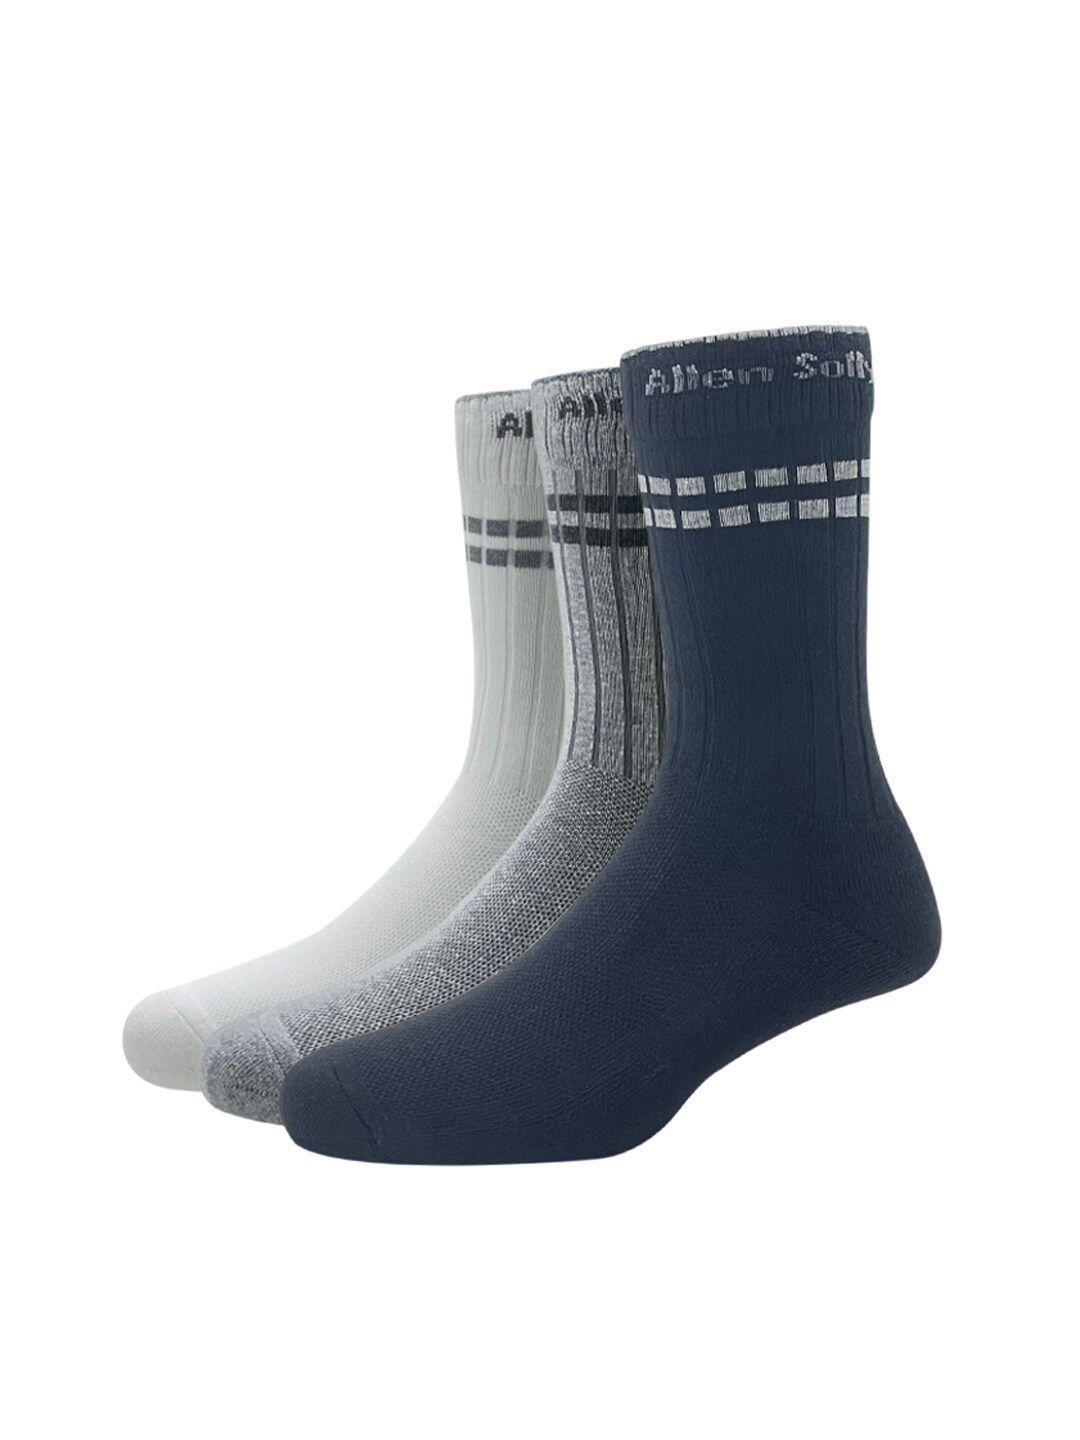 allen solly men pack of 3 patterned calf-length socks